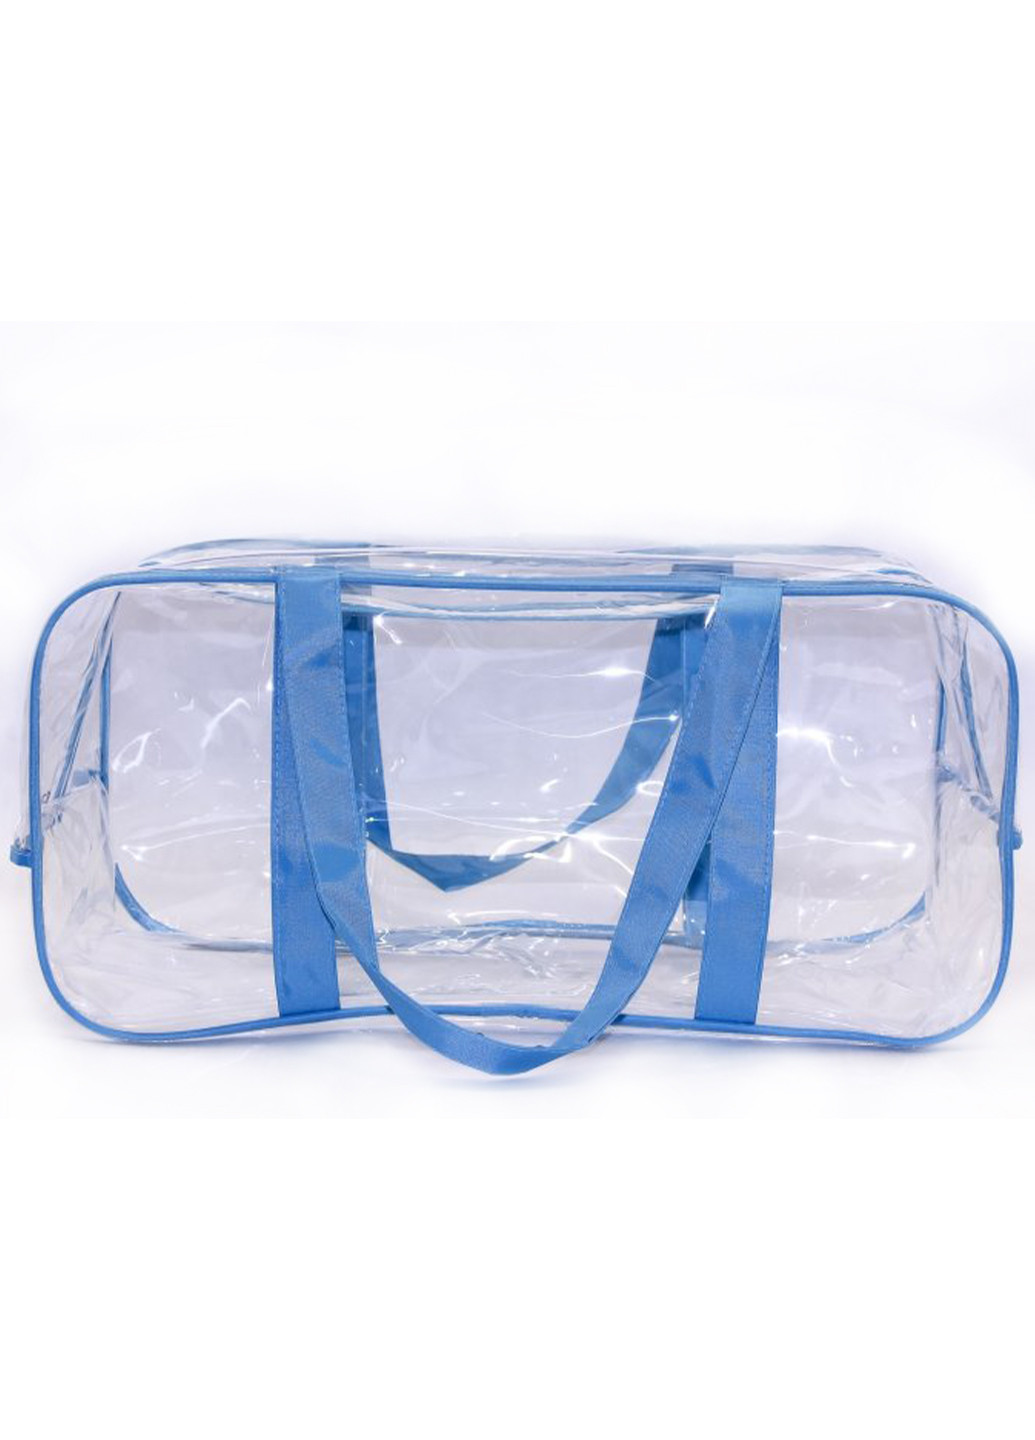 Набор из 3 прозрачных сумок в роддом Joy голубой EcoNova (270006864)